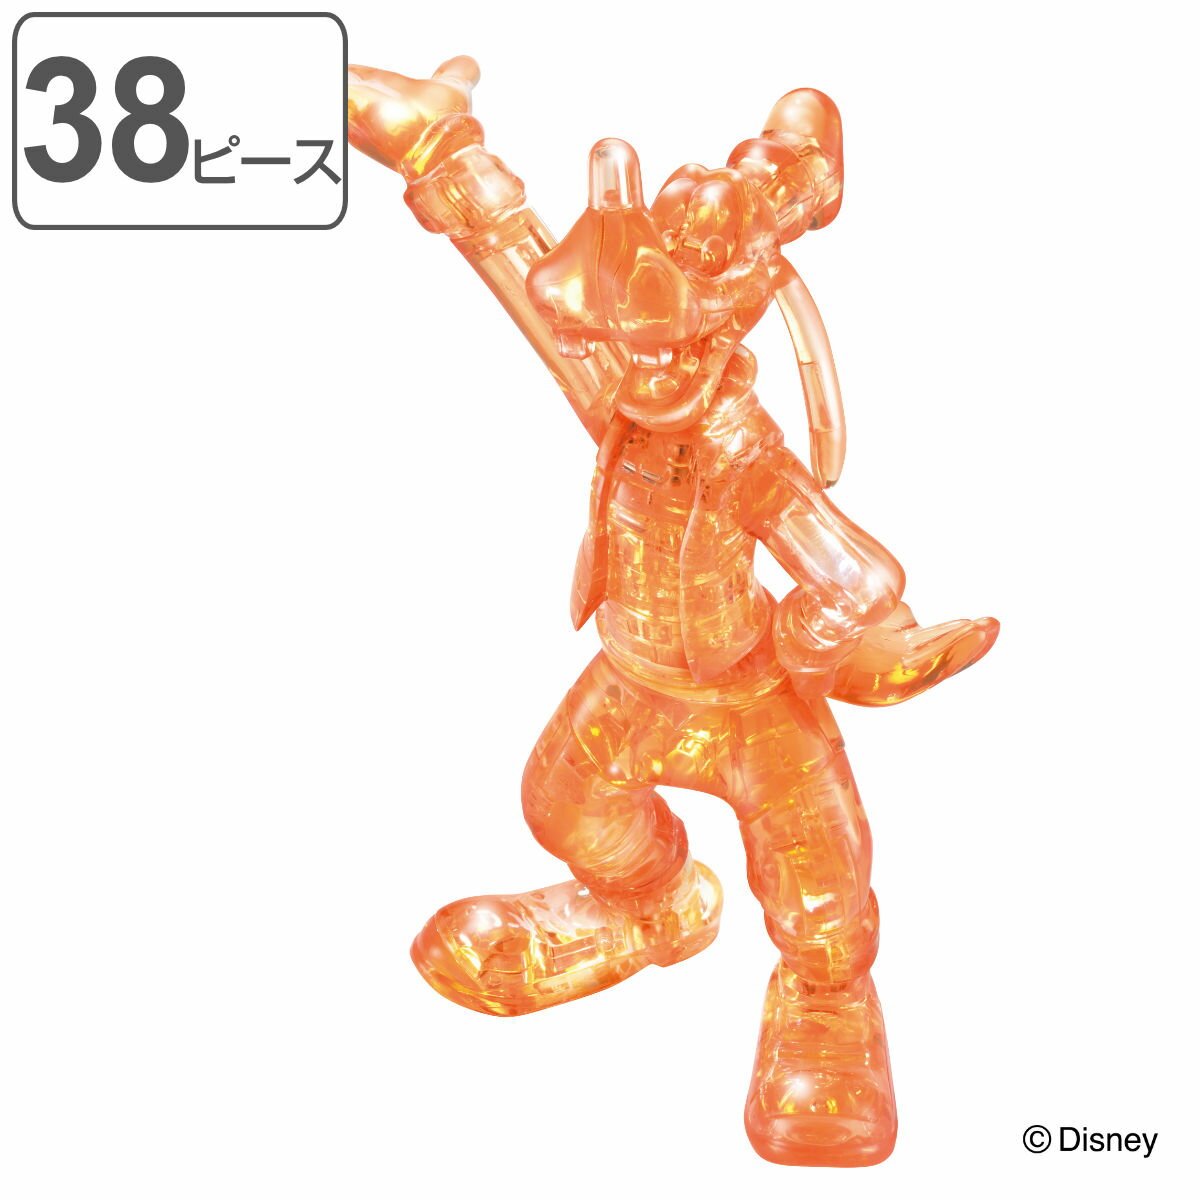 パズル 38ピース ディズニー クリスタルギャラリー グーフィー クリスタルパズル 立体パズル 雑貨 インテリア プレゼント ギフト キャラクター かわいい 組み立てパズル 立体 3D 知育 おもちゃ…